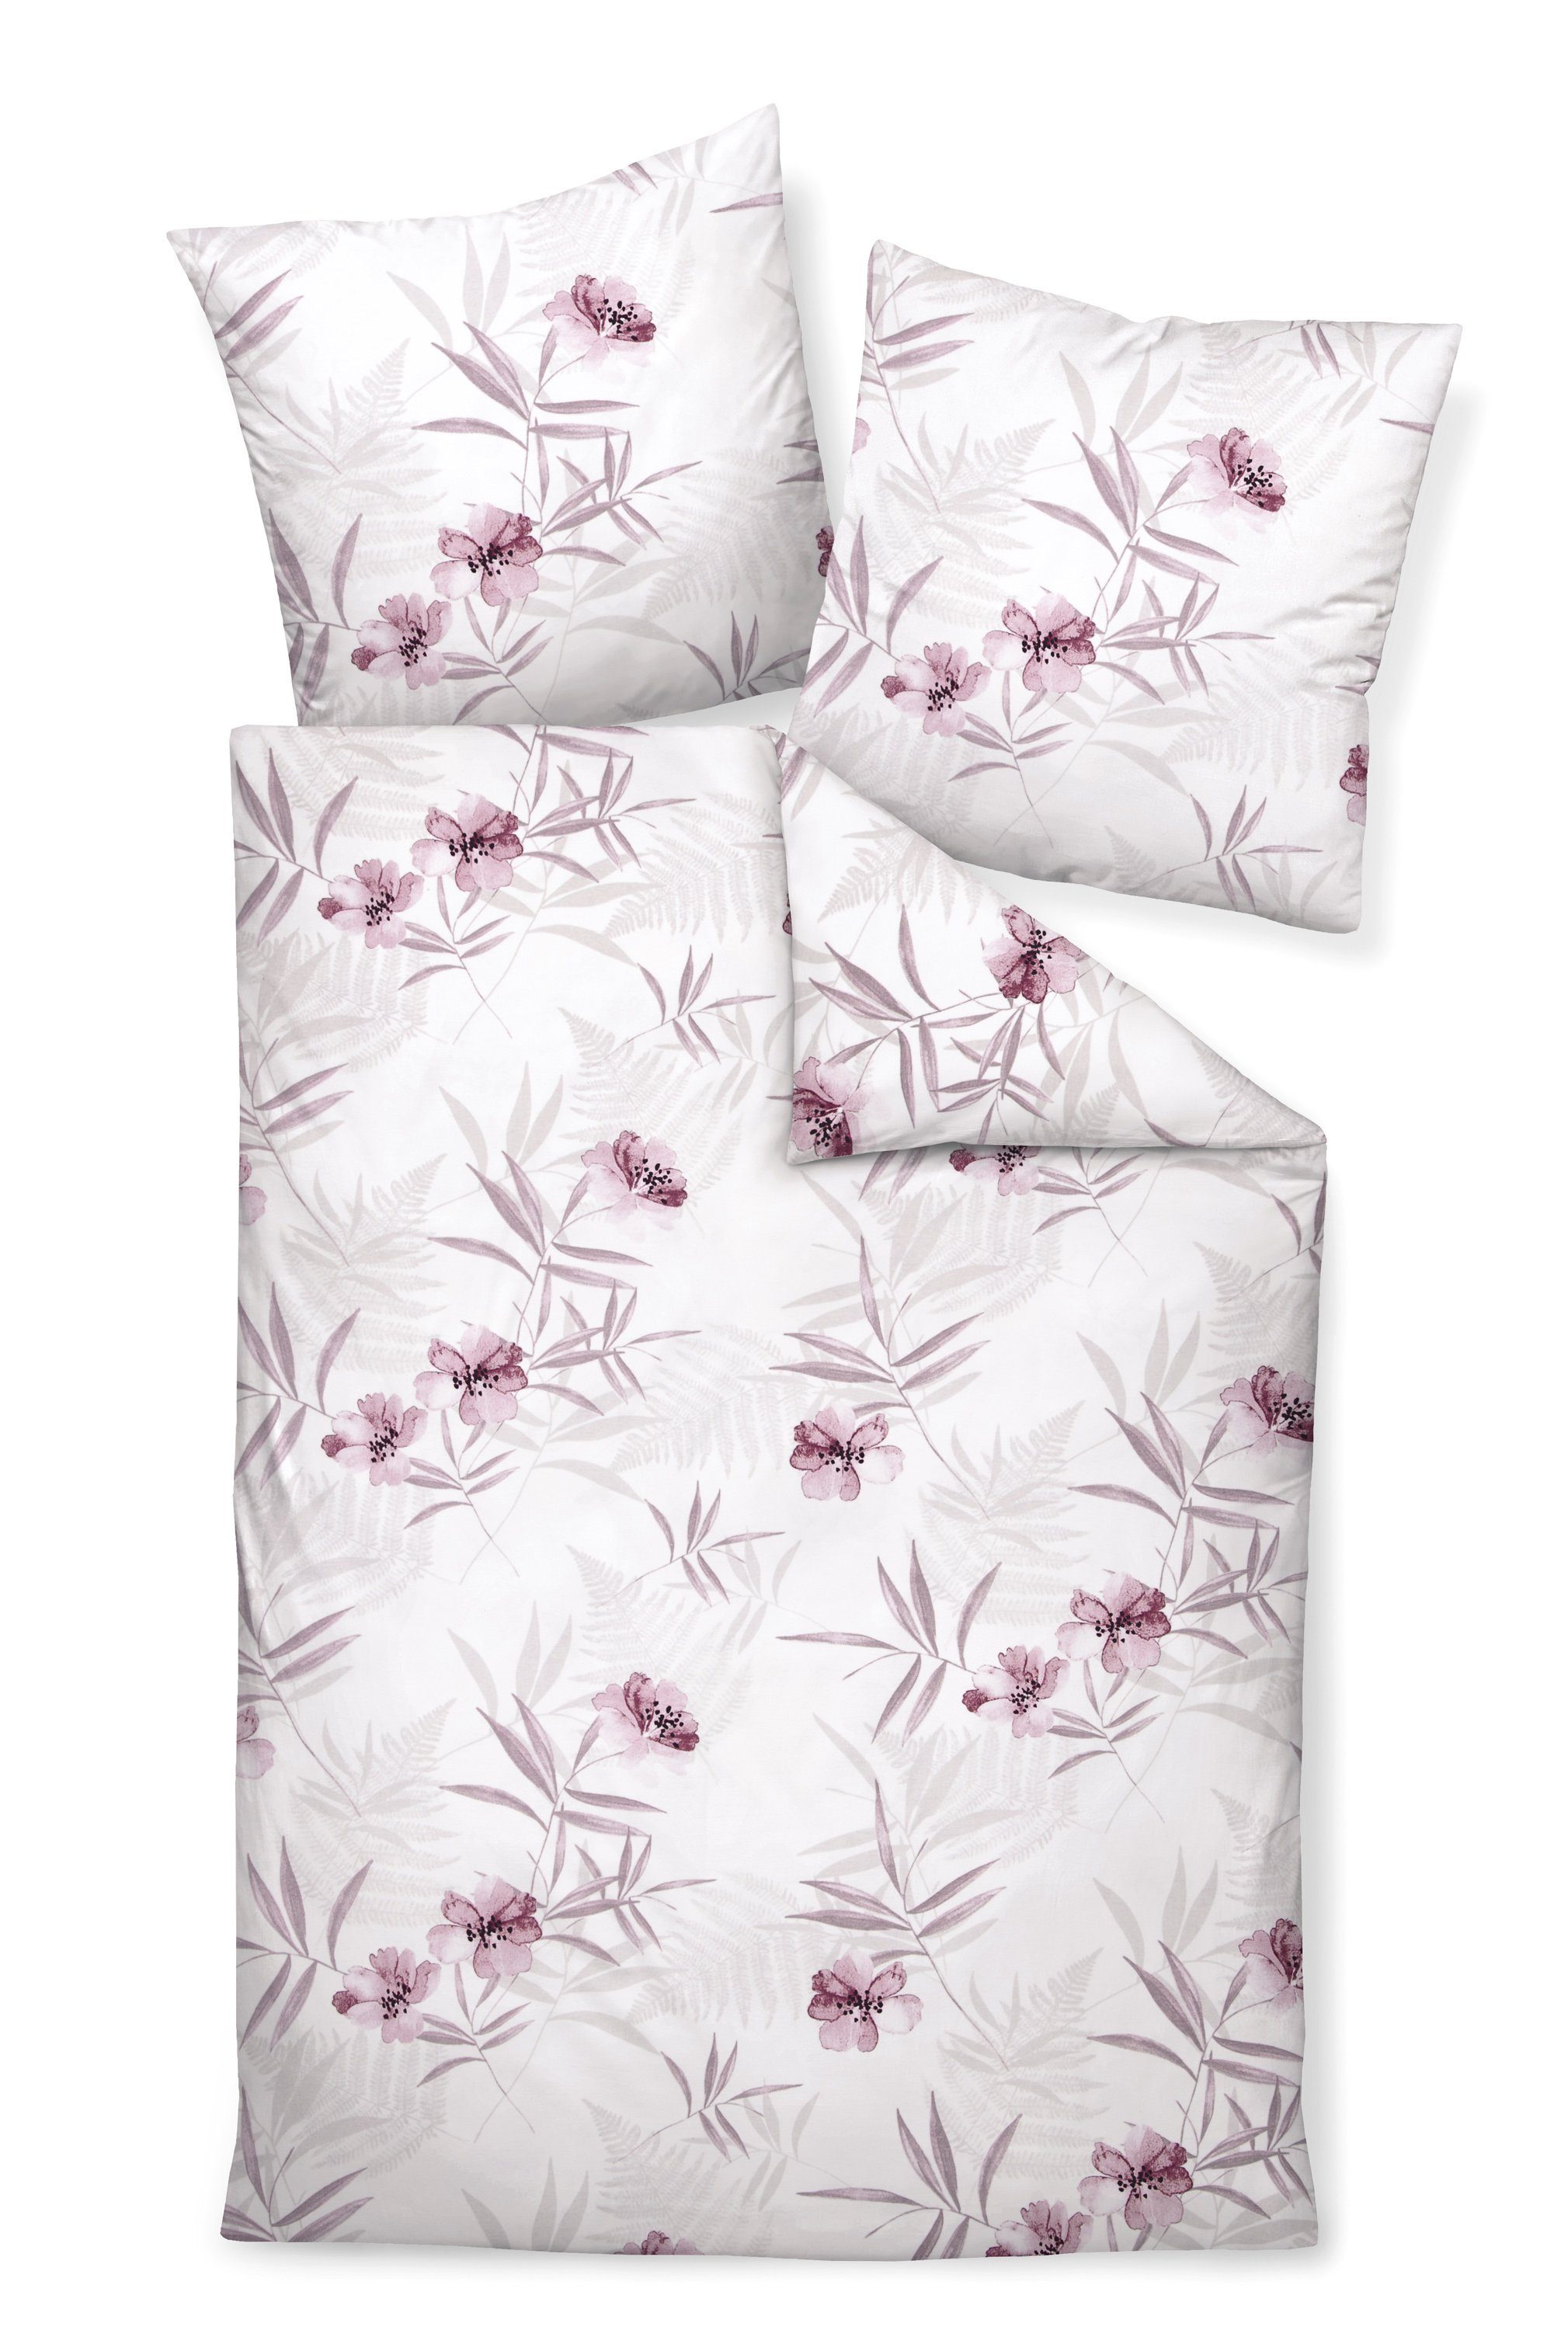 Bettwäsche Premium Baumwolle, Traumschloss, Flanell, 2 teilig, rosa Blüten und blätter auf hellem Hintergrund